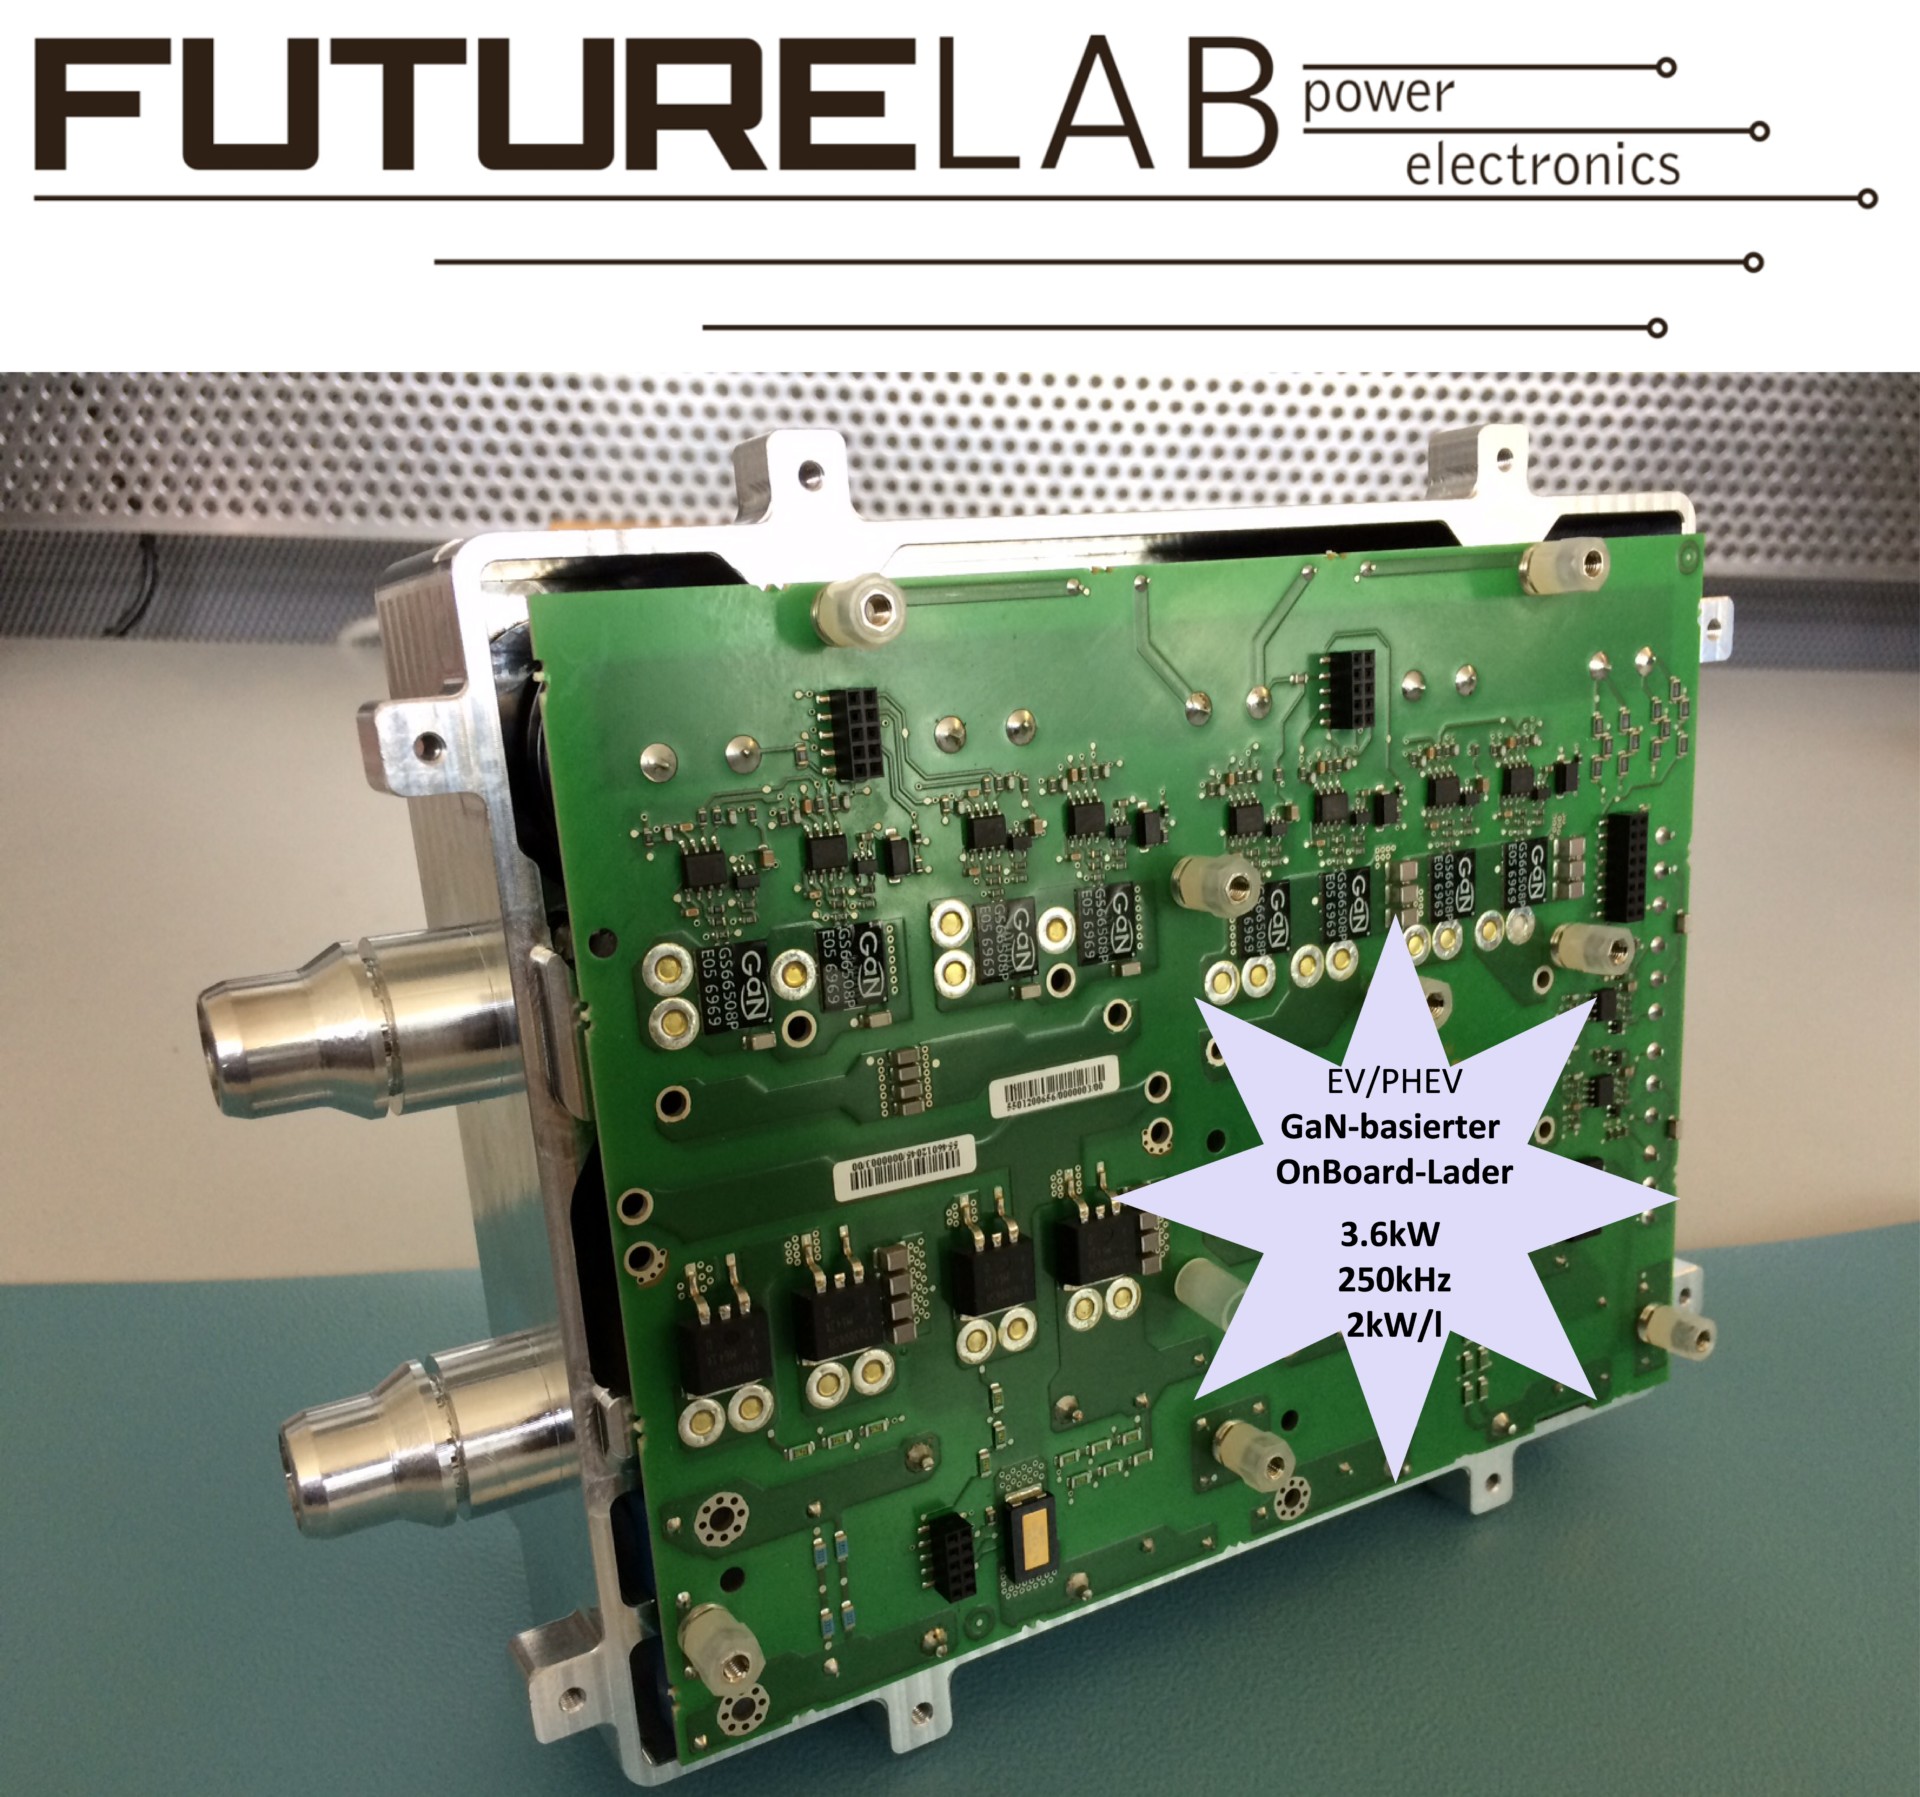 Das ForLab FutureLabPE ermöglicht Forschung zu modularen Konzepten für anwendungsoptimierte Leistungselektronik.